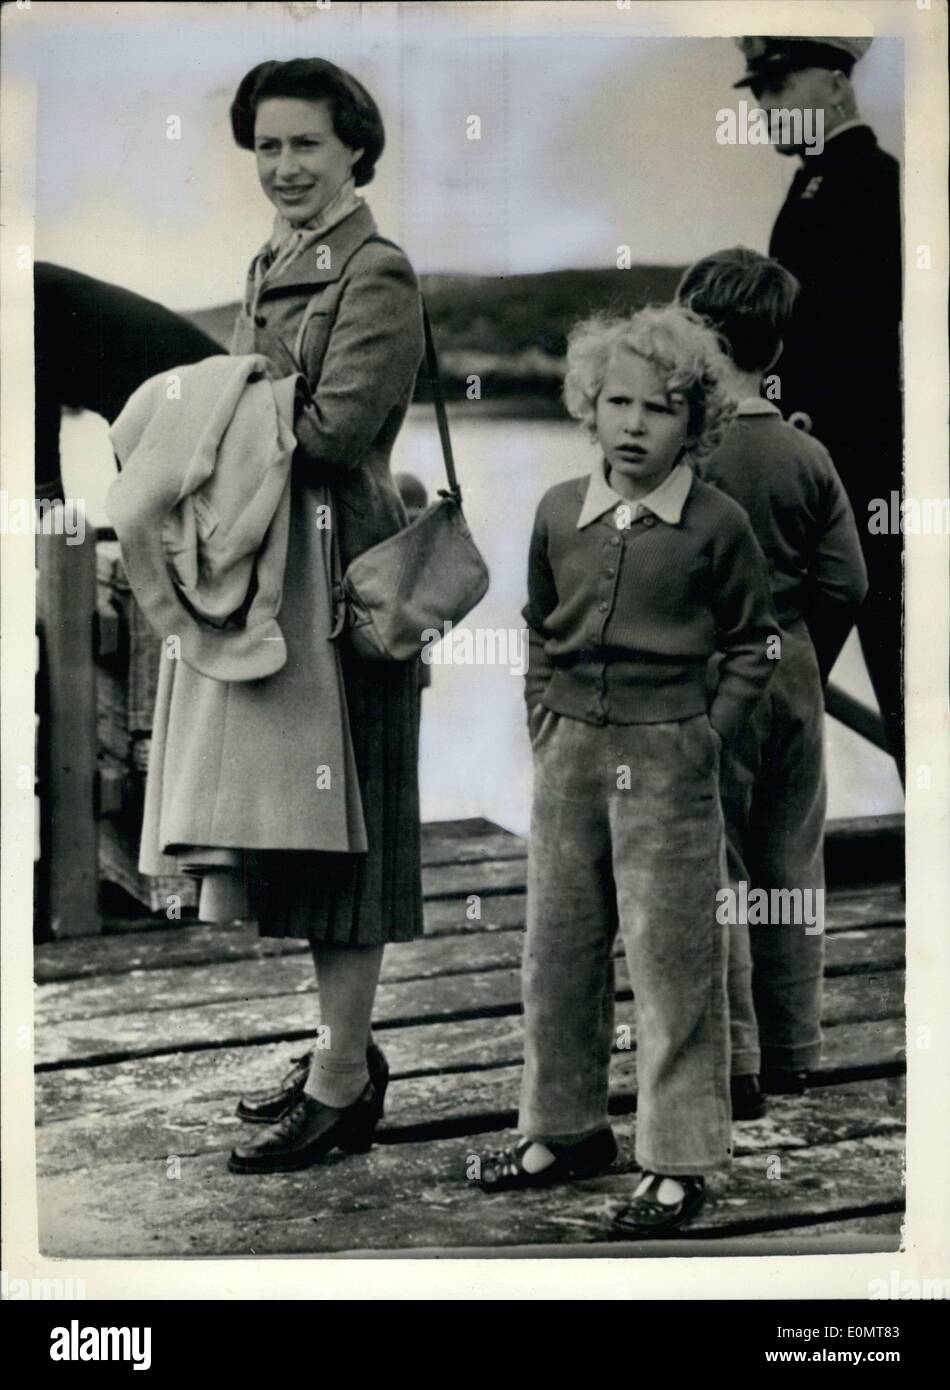 Agosto 08, 1956 - pantaloni in velluto a coste è la principessa Anna vestito di compleanno: indossare pantaloni in velluto a coste, una rosa cardigan, e sandali Princess Anne ha trascorso il suo sesto compleanno di ieri con il suo fratello il principe Carlo e la principessa Margaret, su South Uist, una delle Western Isles, al largo della Scozia. Mentre la regina e il Duca di Edimburgo sono stati touring l'isola, Princess Anne, il principe Carlo e la principessa Margaret è andato per un pranzo a picnic sulla spiaggia Foto Stock